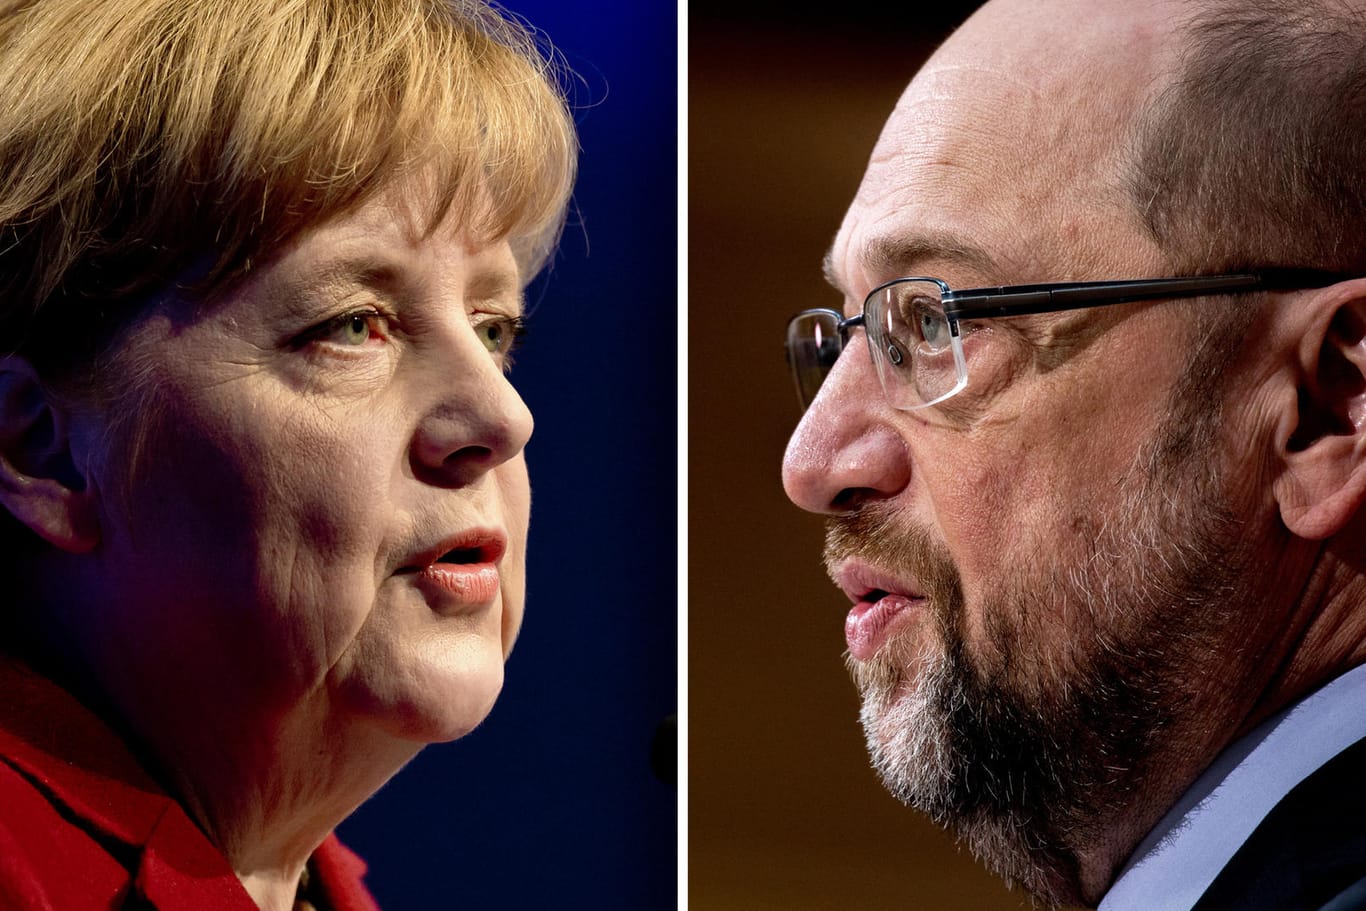 Wie es aussieht, bleibt Angela Merkel (CDU) Kanzlerin. Martin Schulz (SPD) findet kaum noch Zustimmung aus der Bevölkerung.